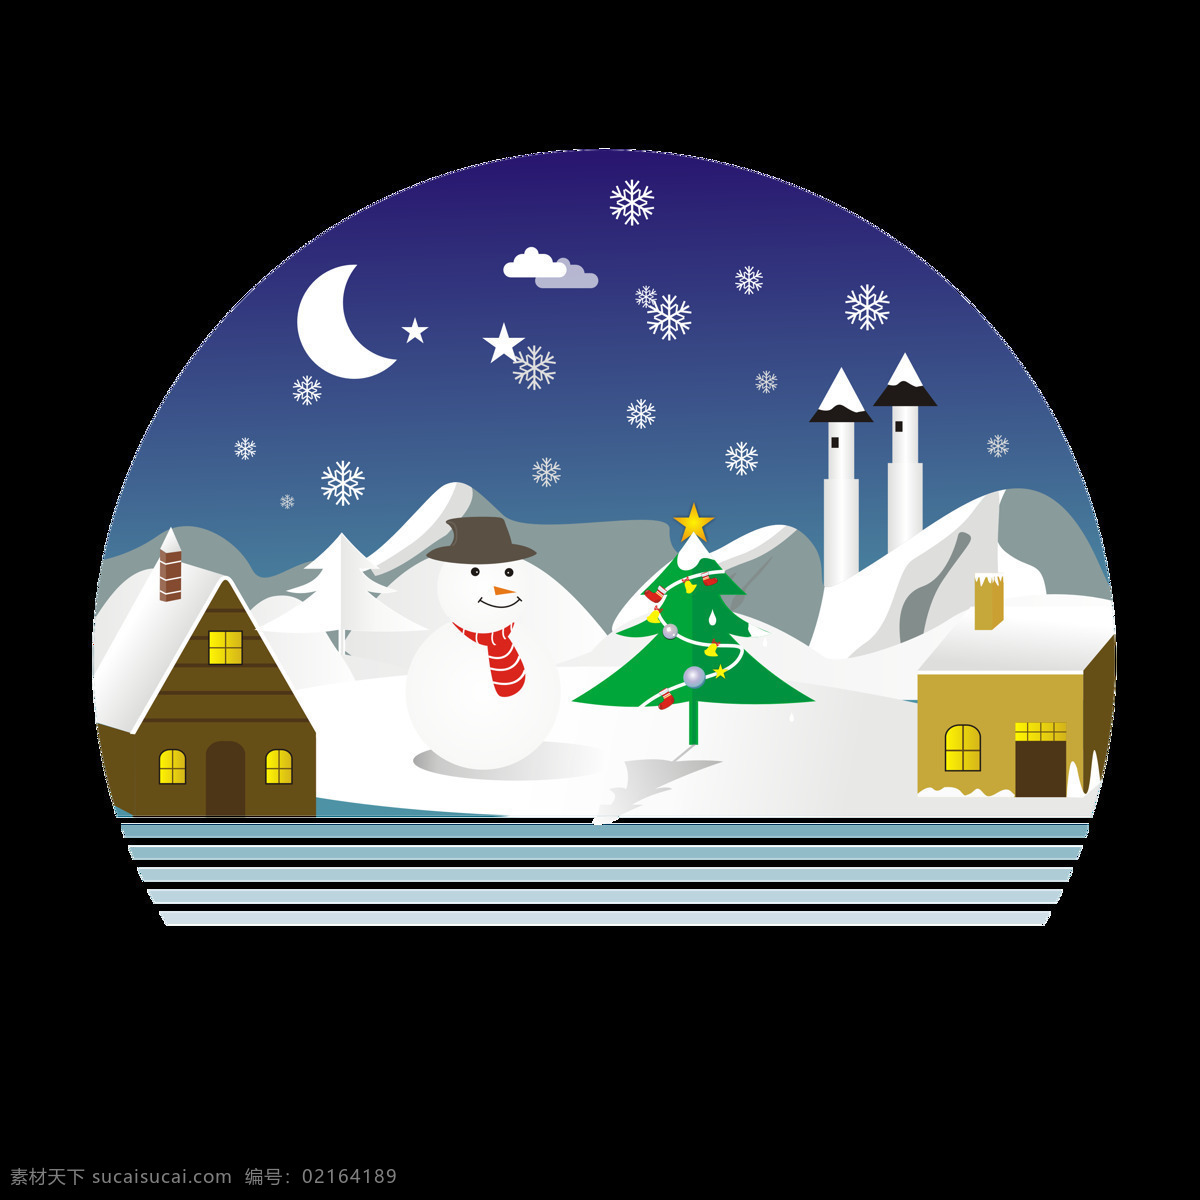 圣诞 元素 场景 手绘 夜里 乡村 雪景 圣诞元素 手绘场景 雪人 雪山 圣诞树 圣诞场景 小木房